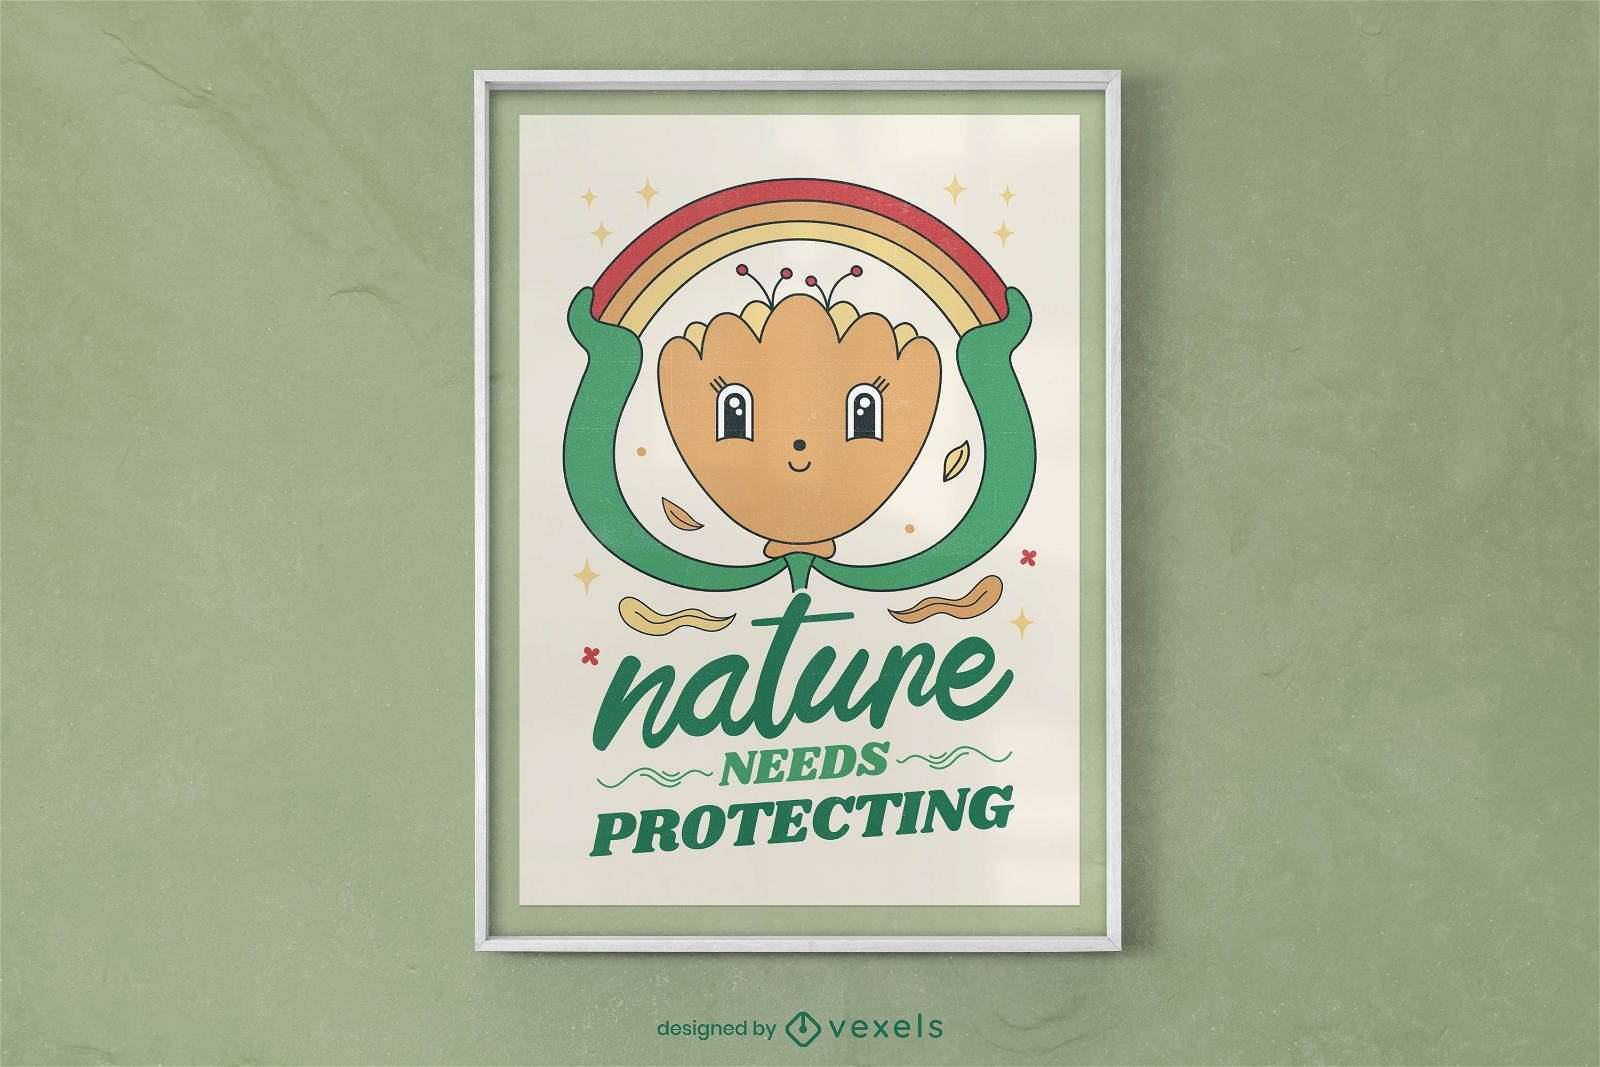 La naturaleza necesita proteger el diseño del cartel.